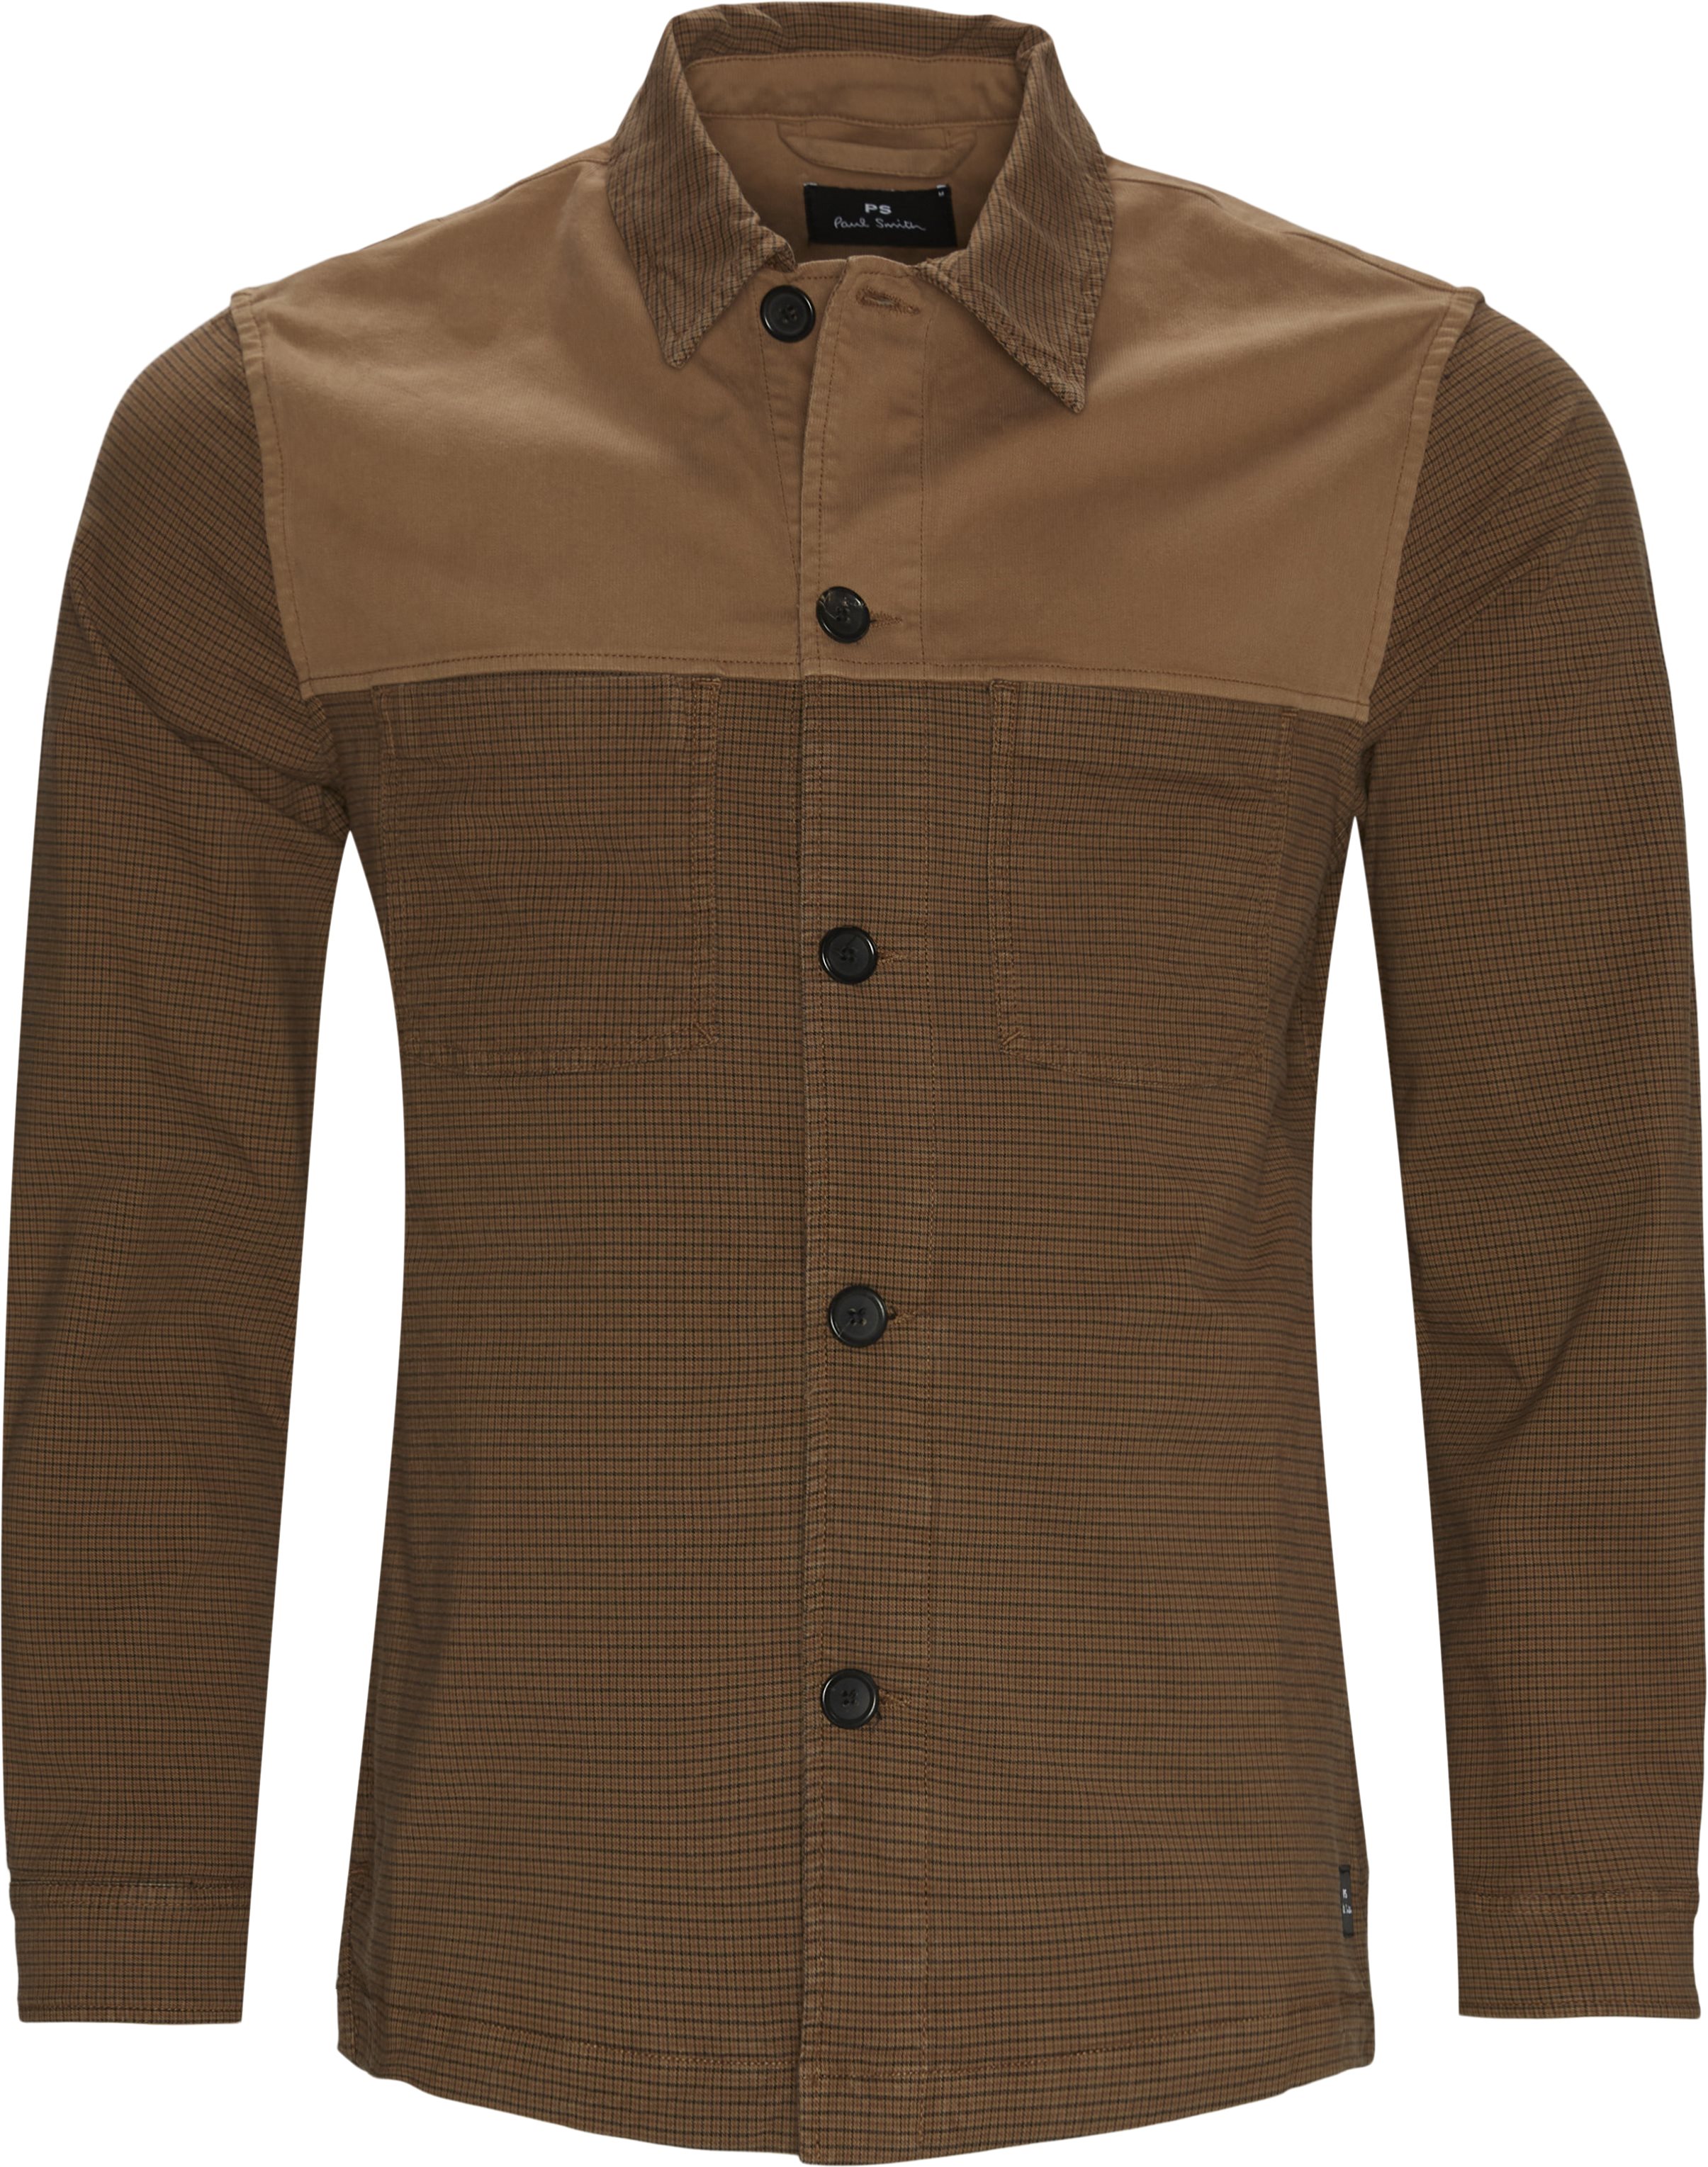 Workwear Jacket - Overshirts - Regular fit - Brown